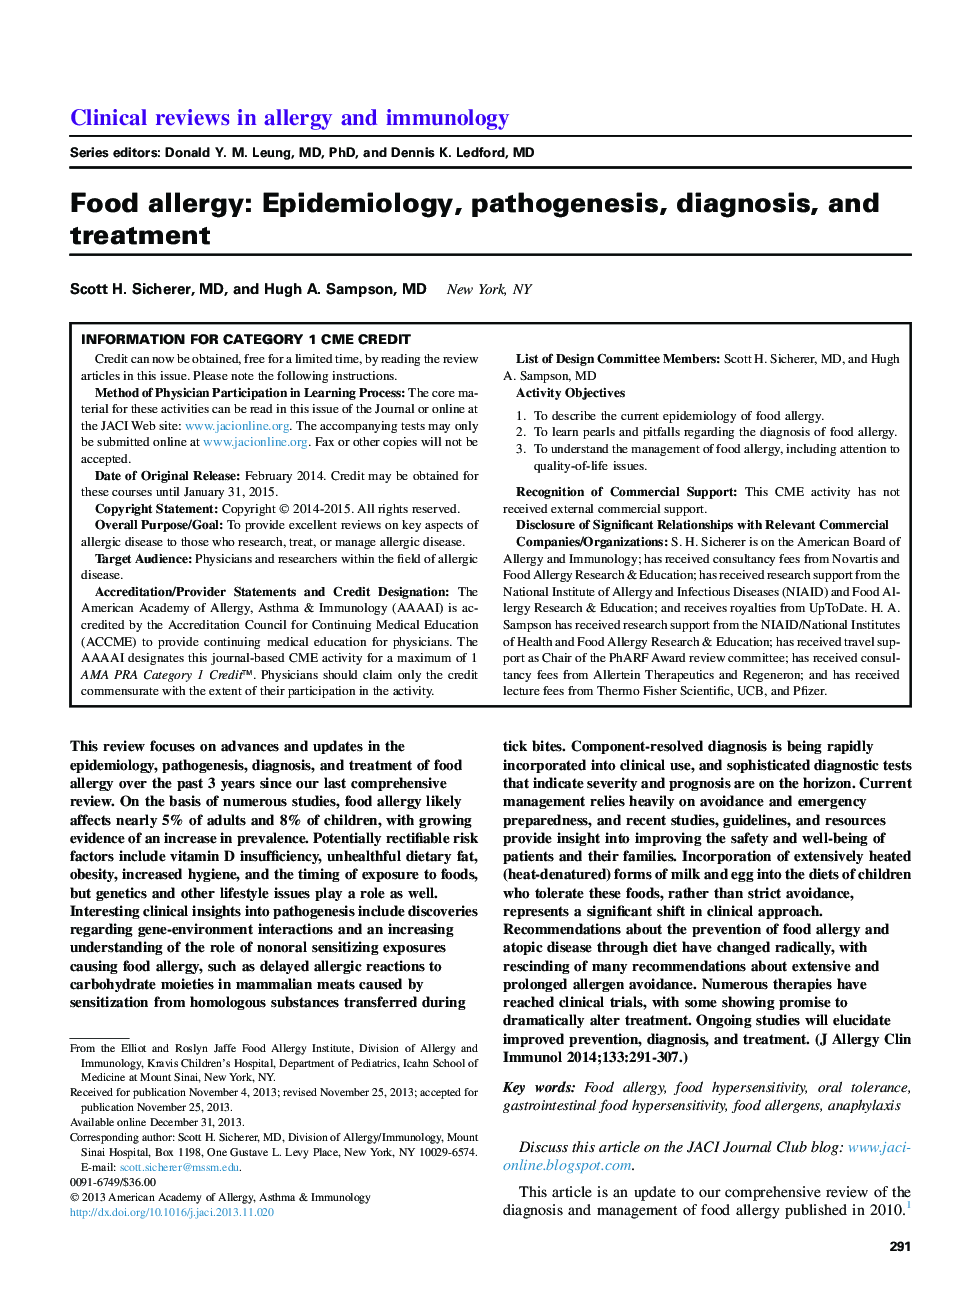 آلرژی غذایی: اپیدمیولوژی، پاتوژنز، تشخیص و درمان 